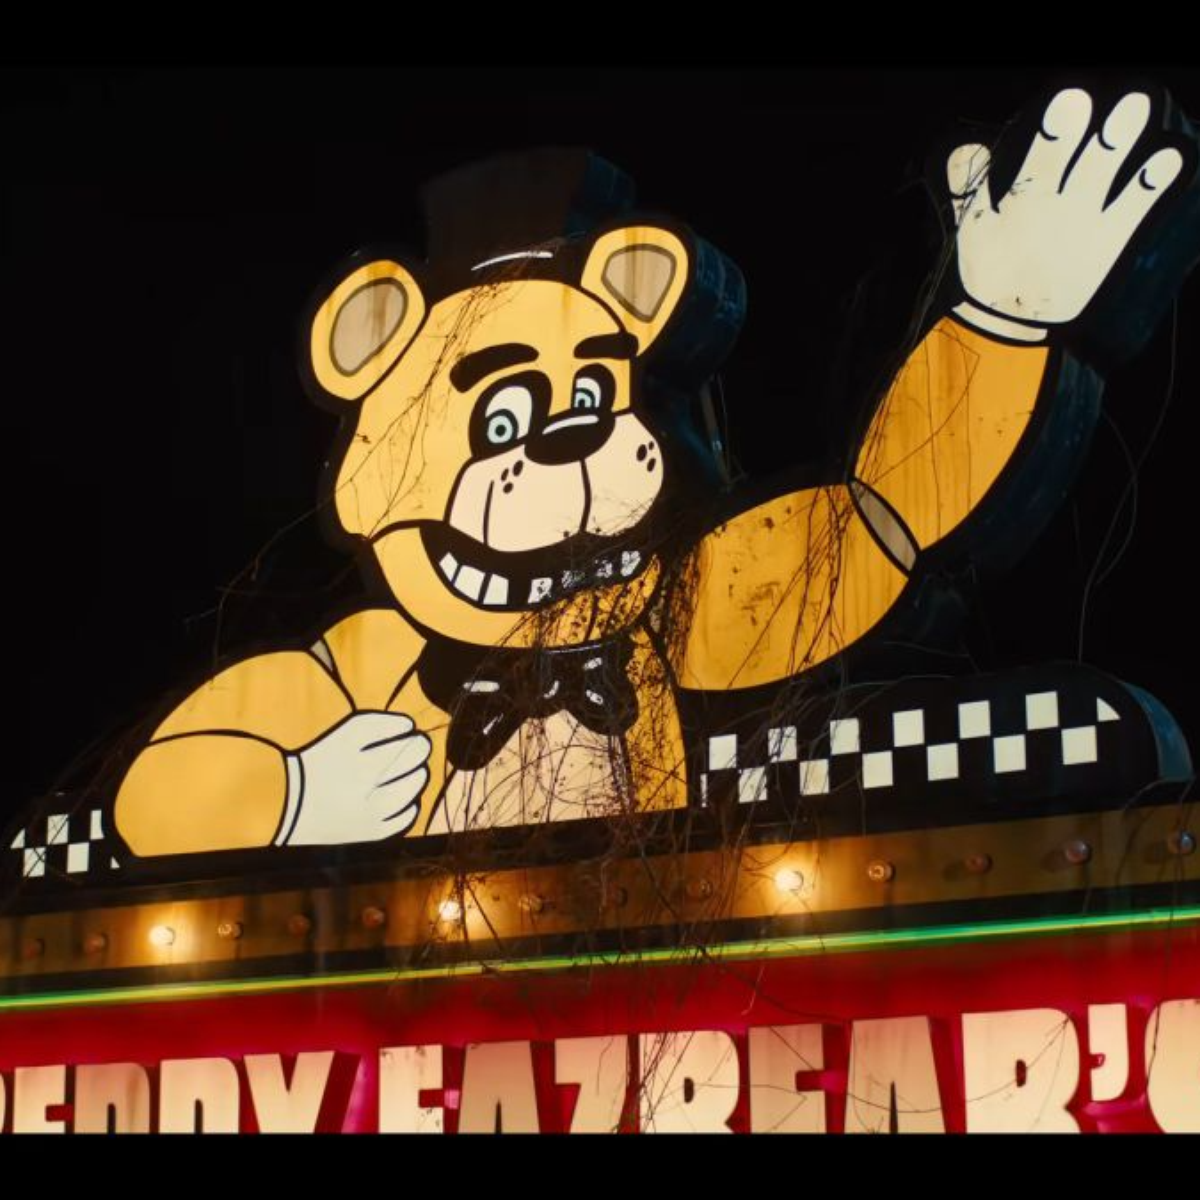 Filme de Five Nights at Freddy's ganha novo trailer e data no